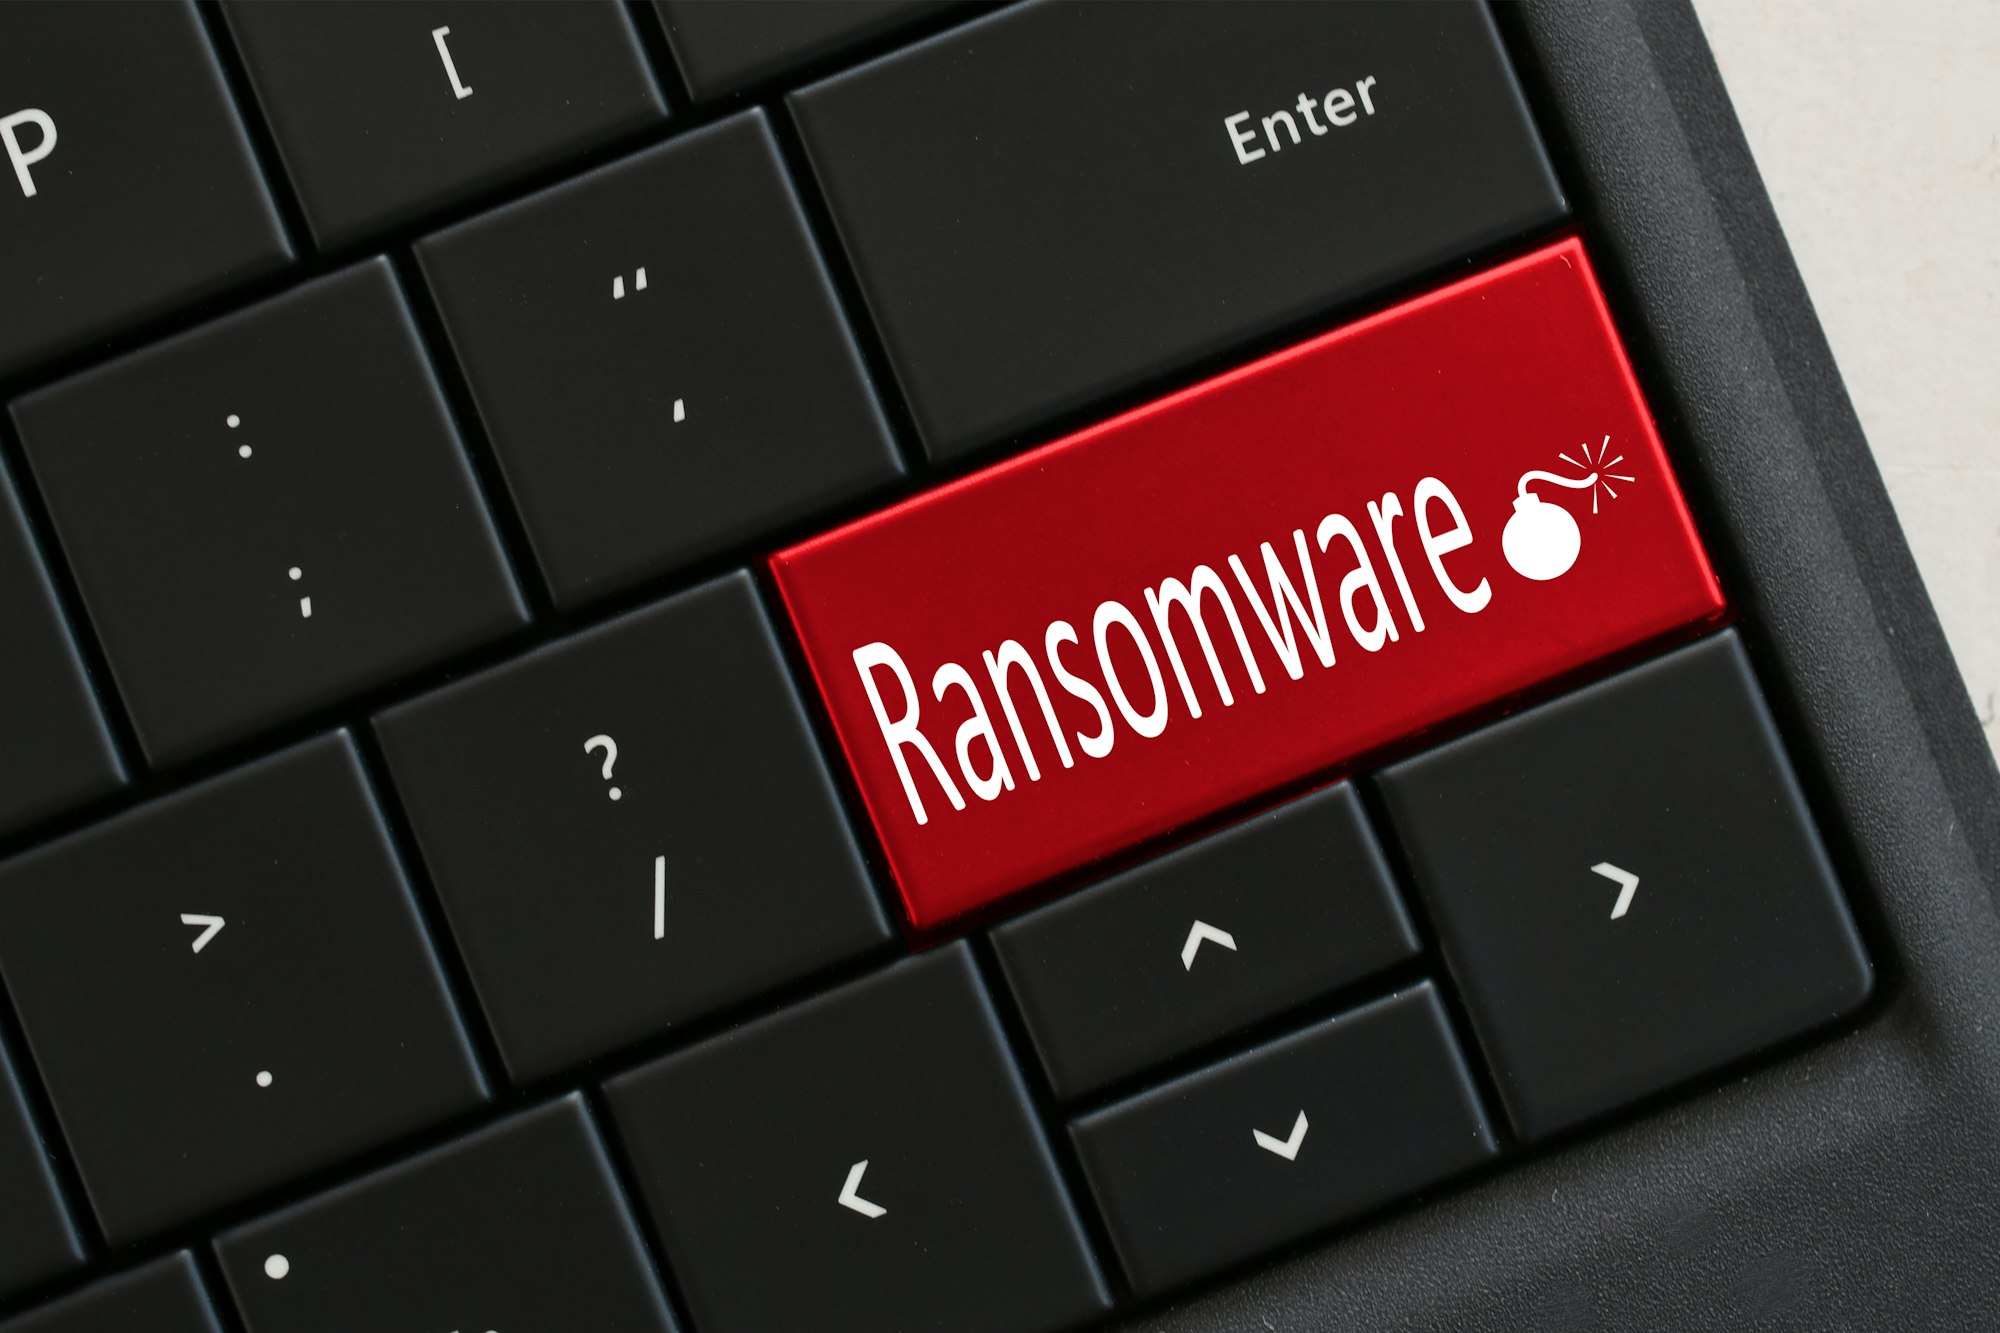 Attaque de ransomware : Qu'est-ce que c'est et comment ça fonctionne ? Les secrets pour vous protéger enfin révélés !